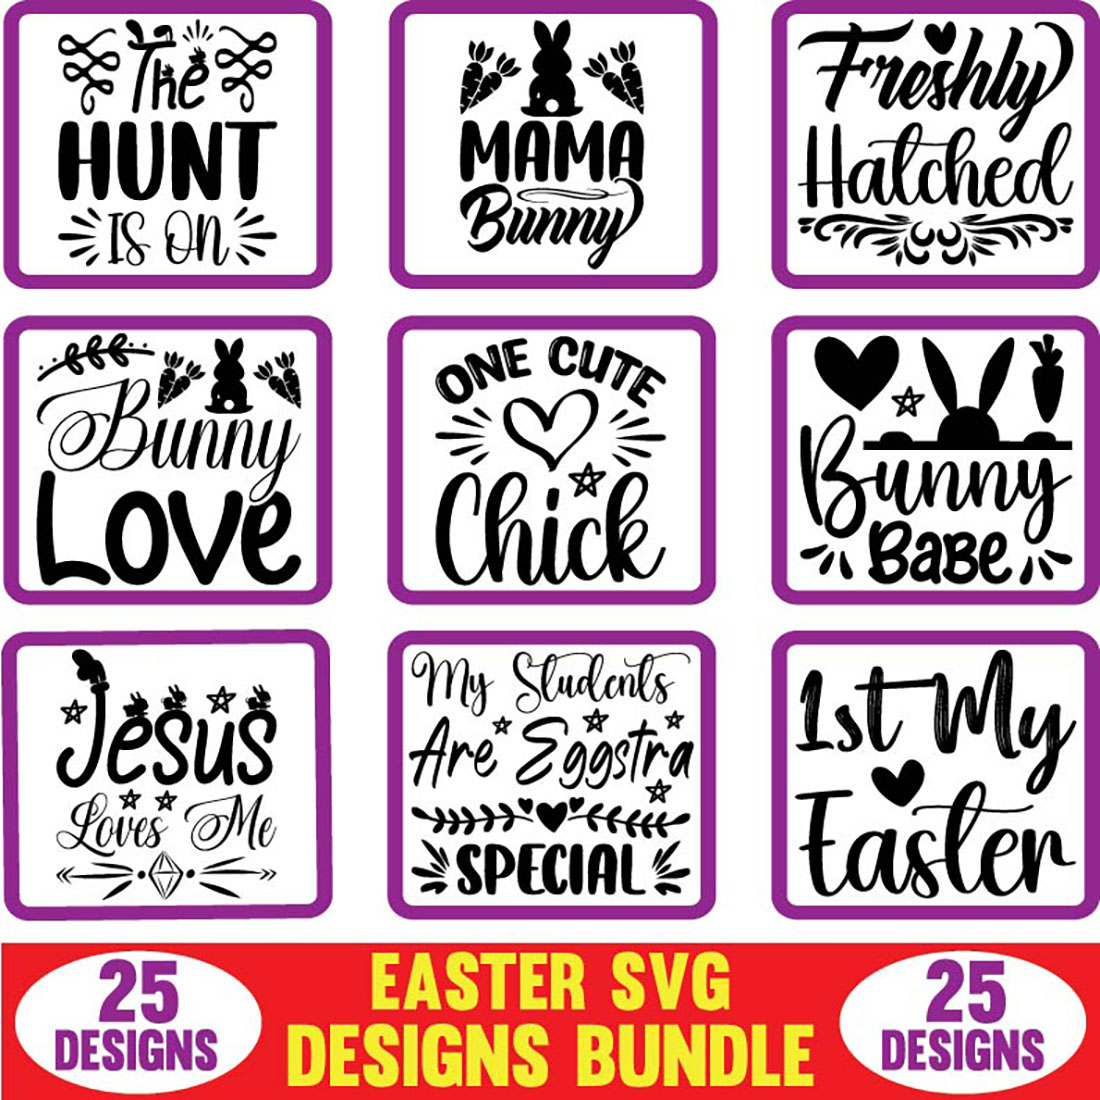 Easter SVG Designs Bundle main cover image.